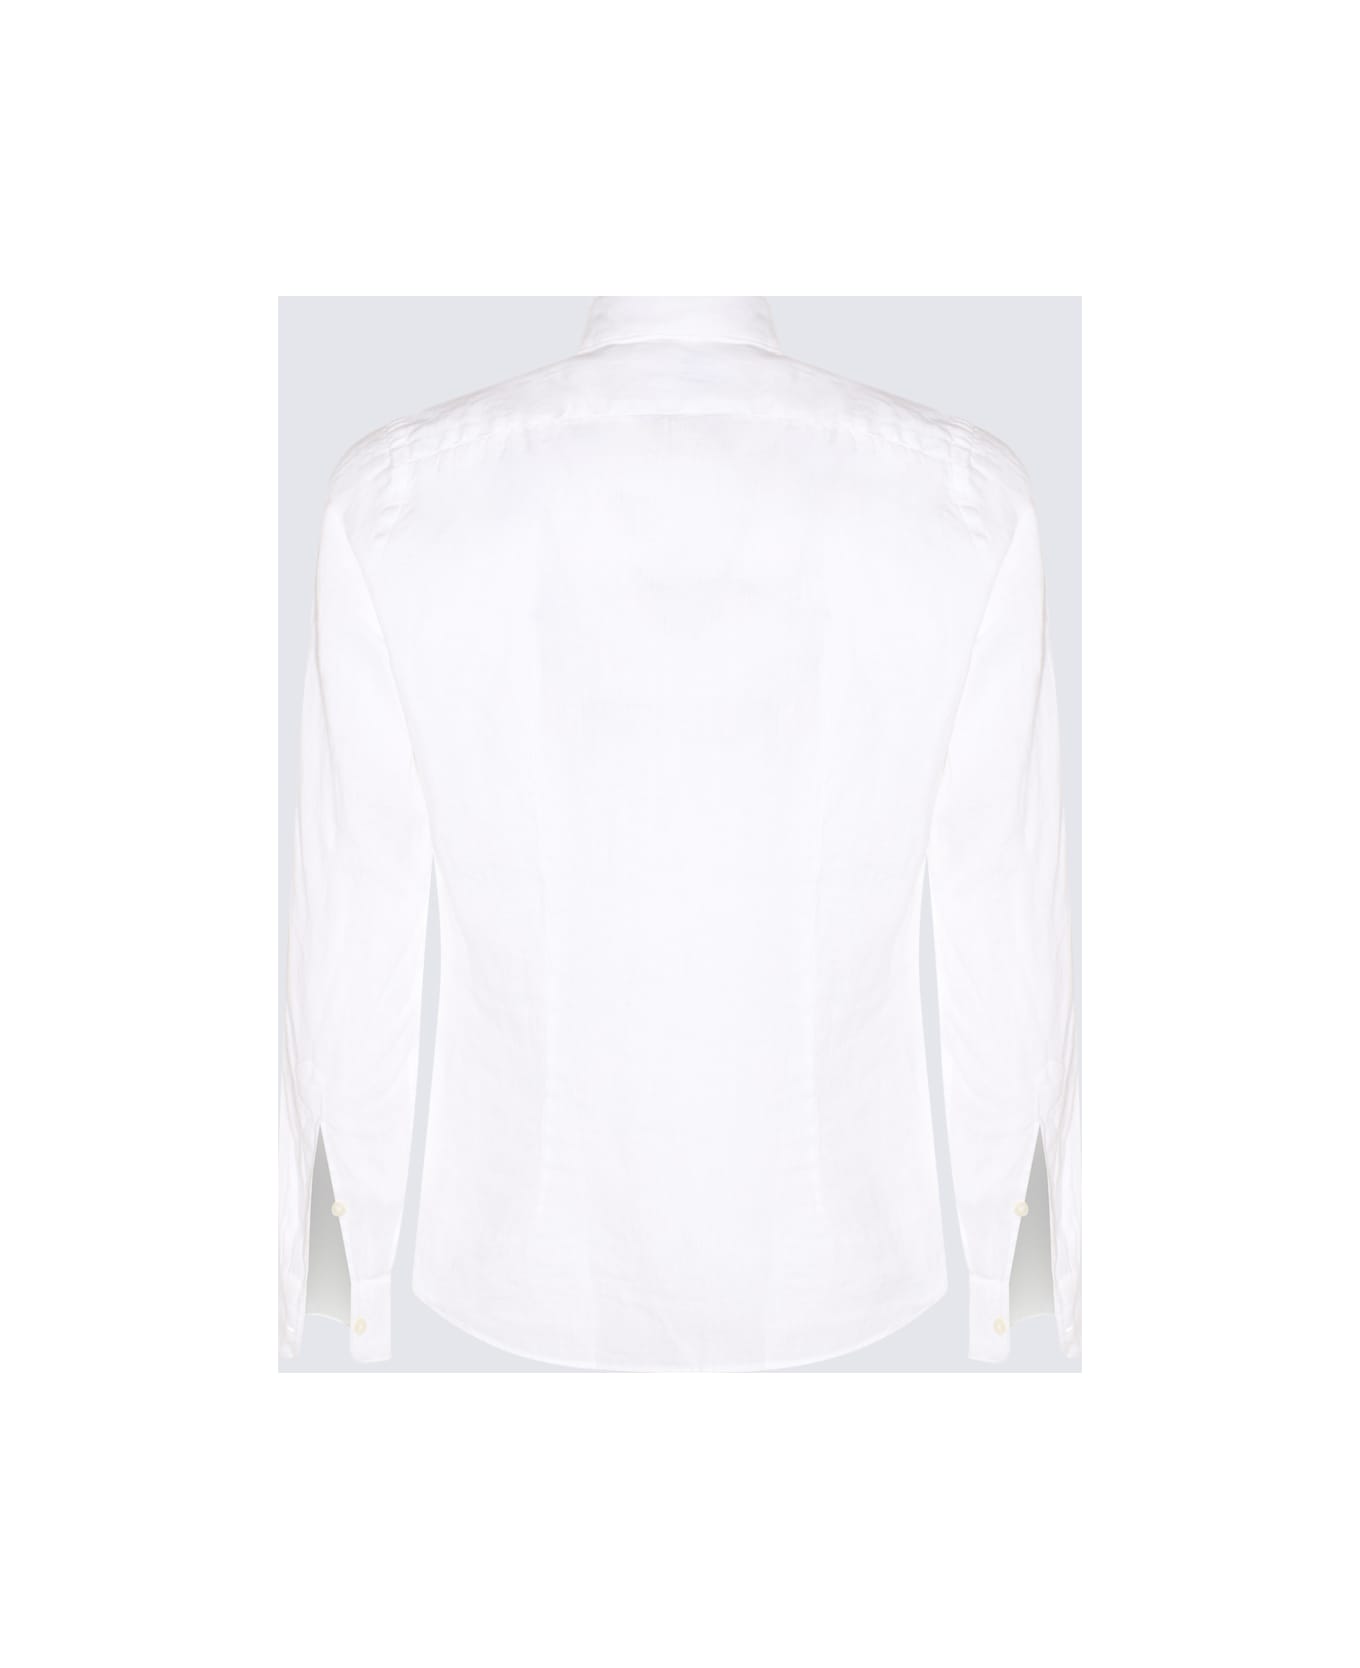 Altea White Linen Shirt - White